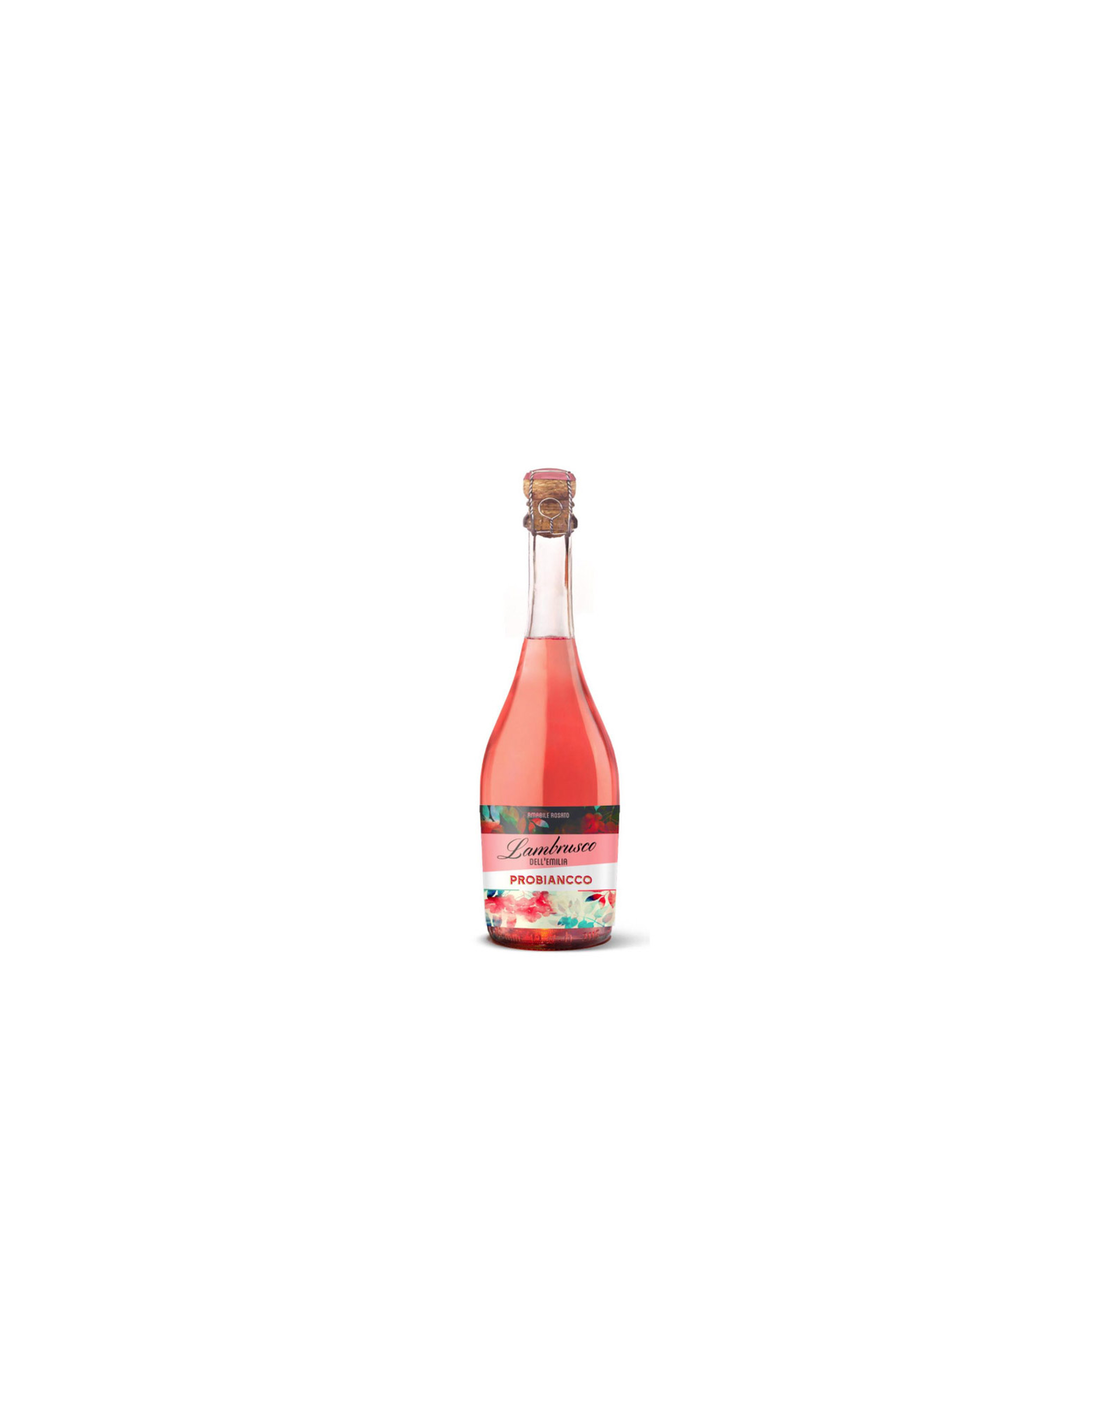 Vin roze dulce, Lambrusco, Pro Bianco Dell’Emilia, 0.75L, Italia alcooldiscount.ro